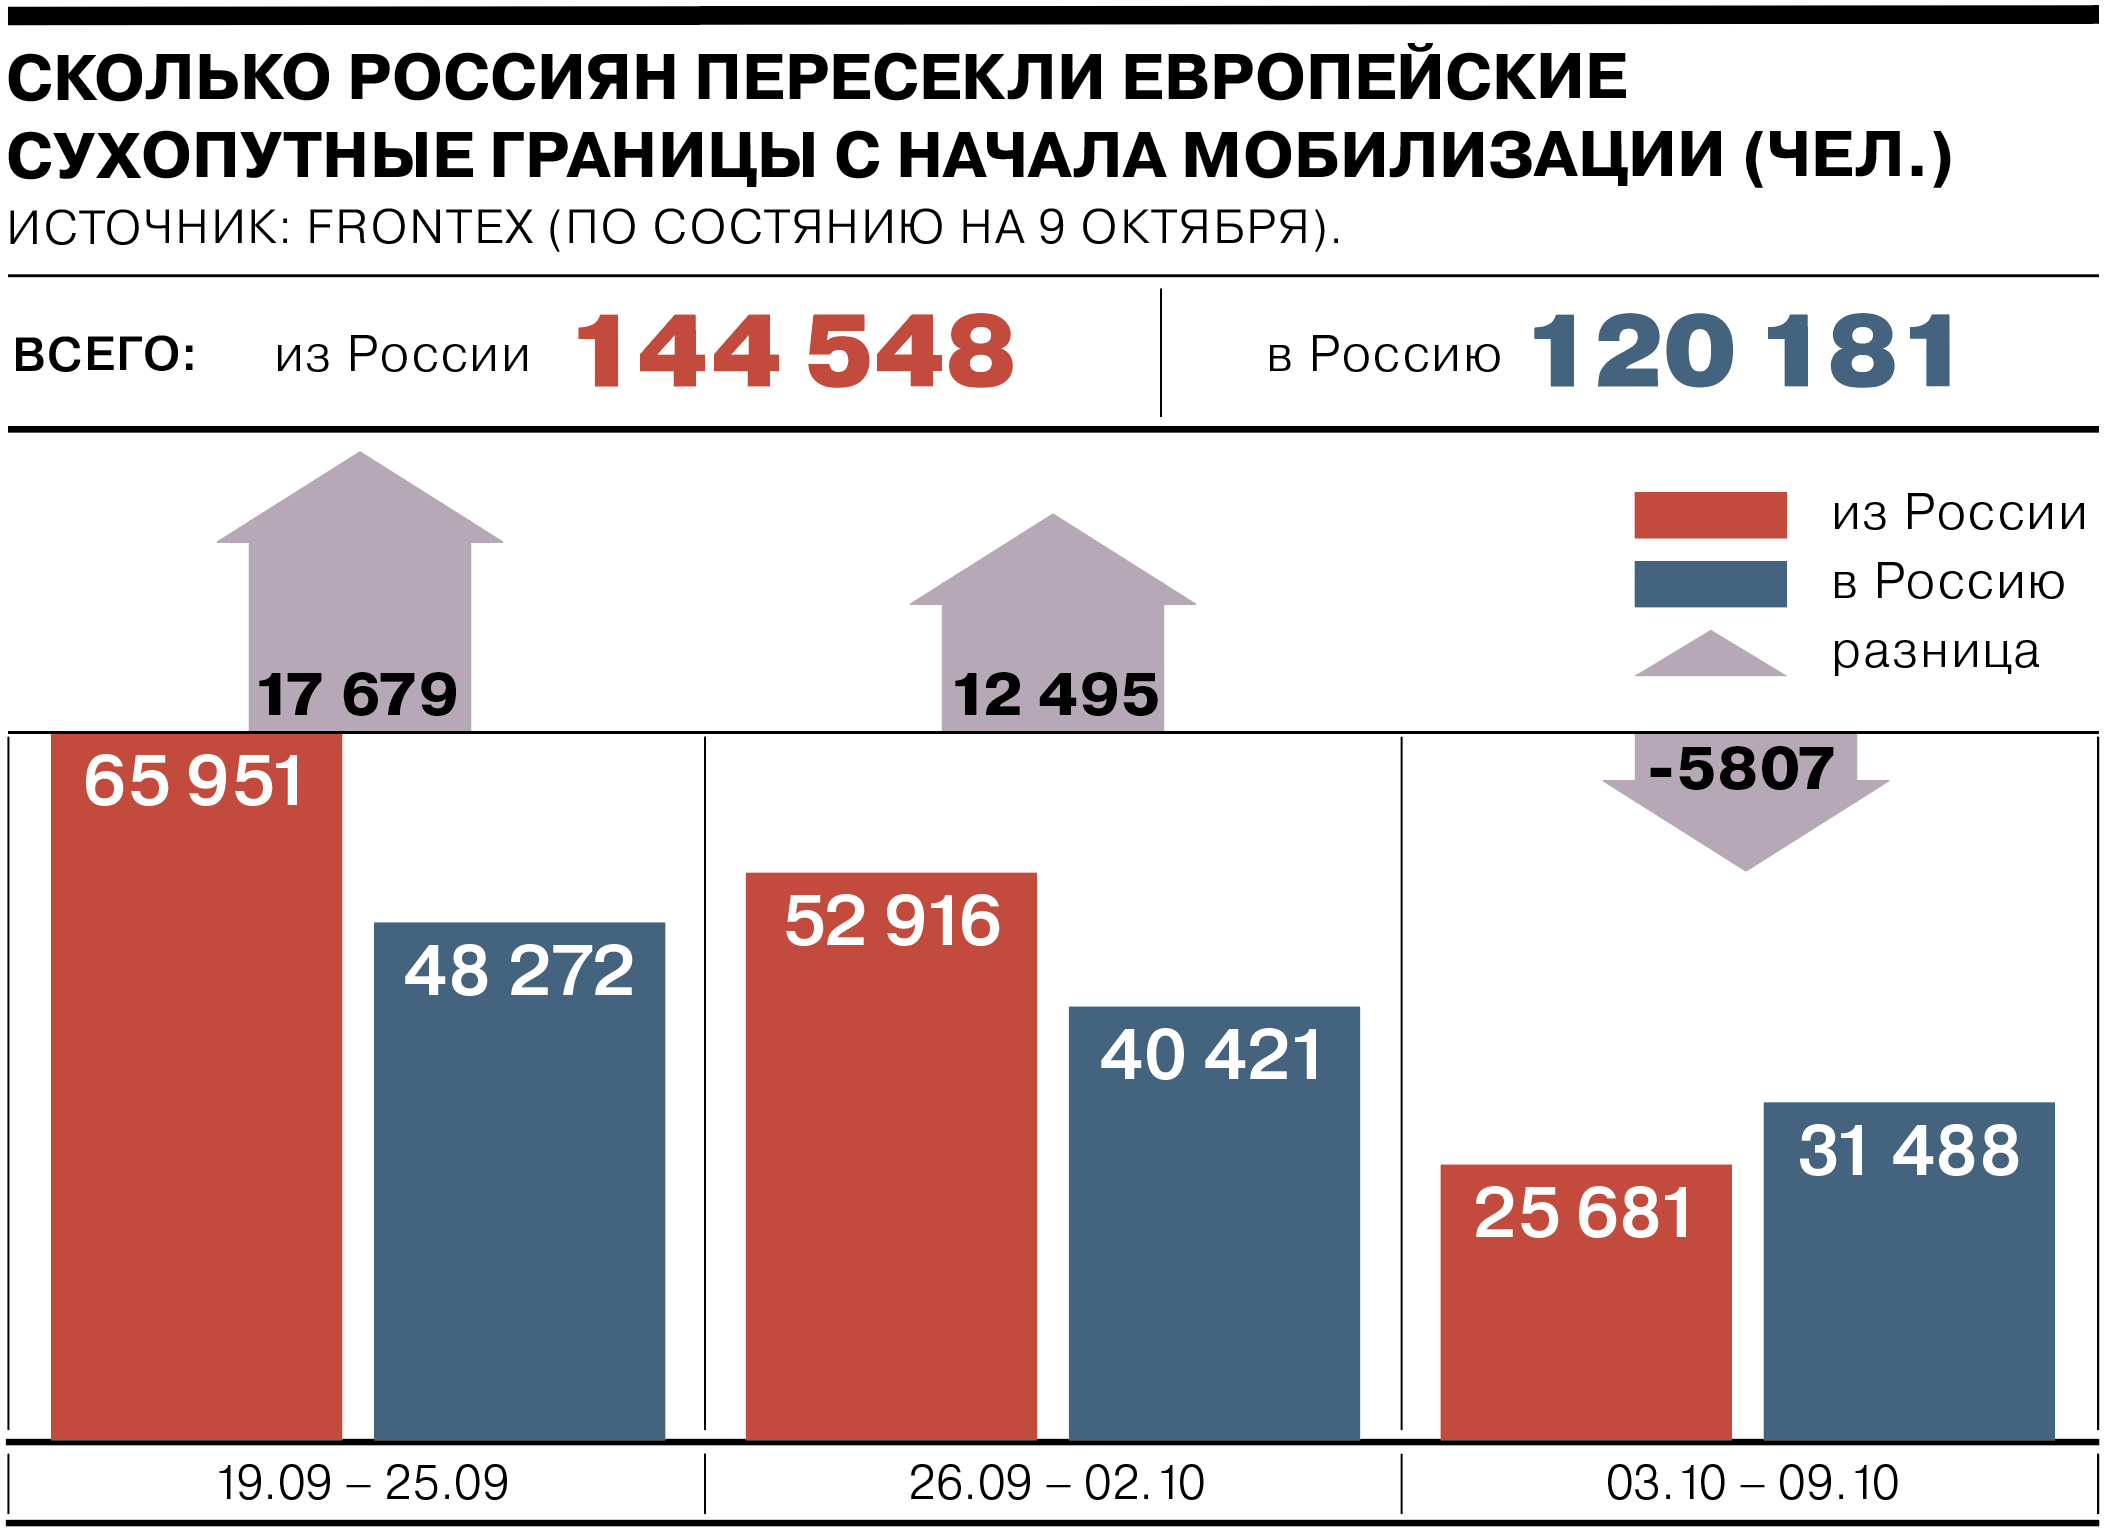 Сколько длится мобилизация. Статистика мобилизации. Количество мобилизированных в России. Число мобилизованных по регионам. Количество мобилизованных по регионам.